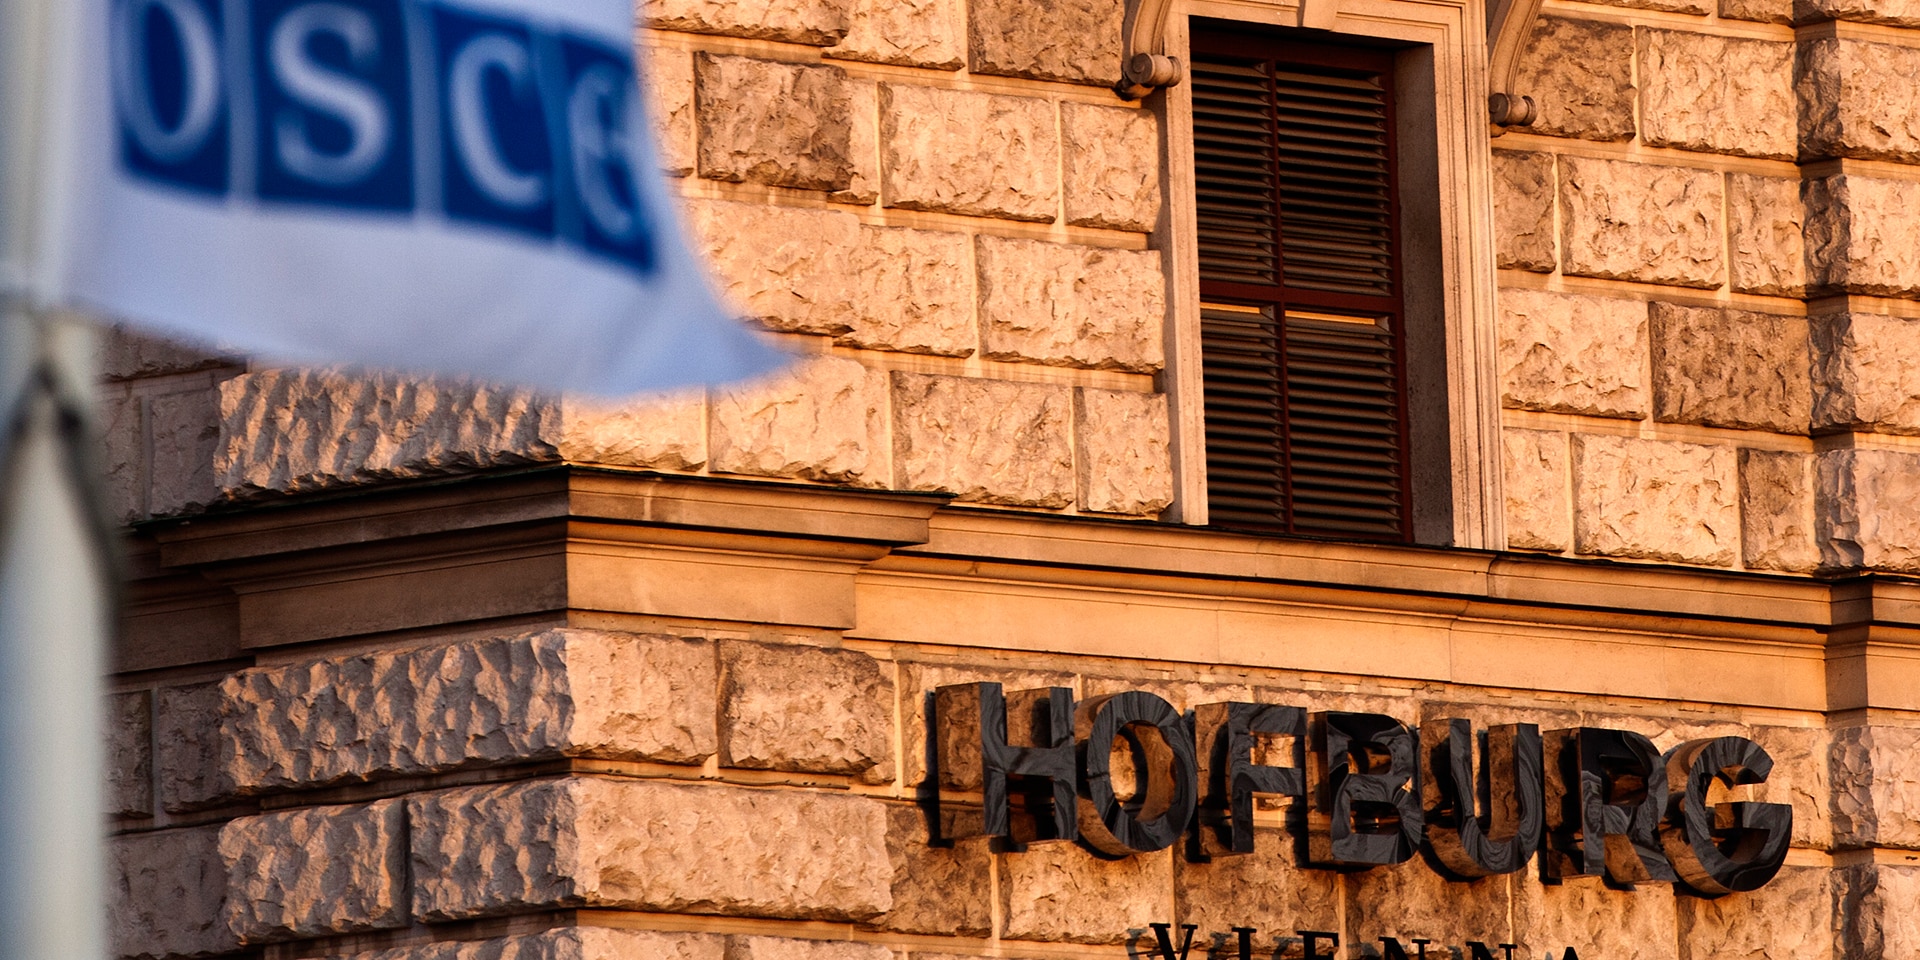  Hofburg di Vienna: sede delle riunioni regolari del Consiglio permanente, il principale organo decisionale dell’Organizzazione per la sicurezza e la cooperazione in Europa (OSCE).